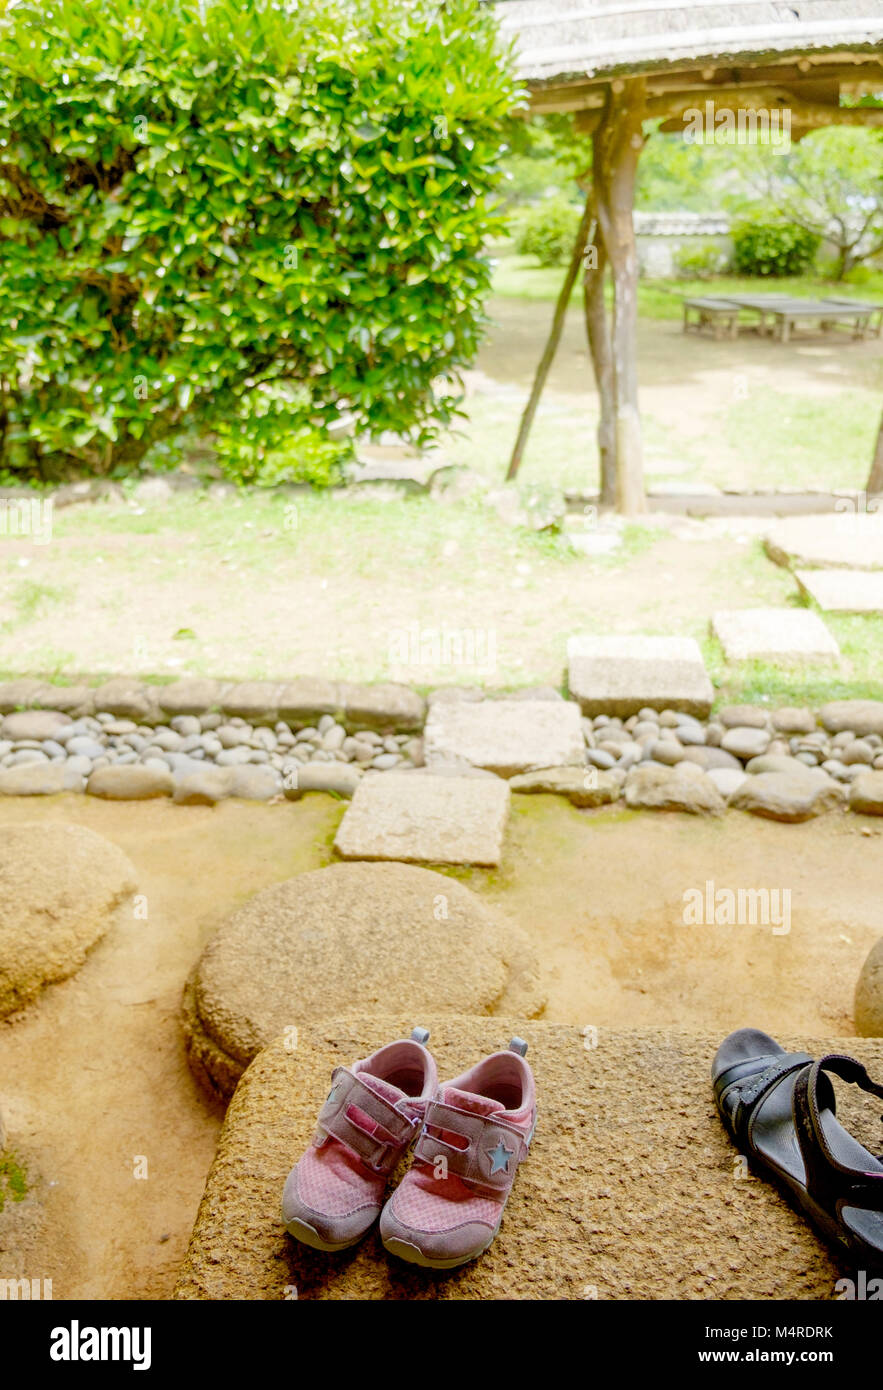 Les chaussures pour enfants rose sur l'étape de la pierre. Sur la droite, 1 noir sandale. Gauche en arrière-plan sont des arbres. Sur la droite une structure rustique. Portrait. Banque D'Images